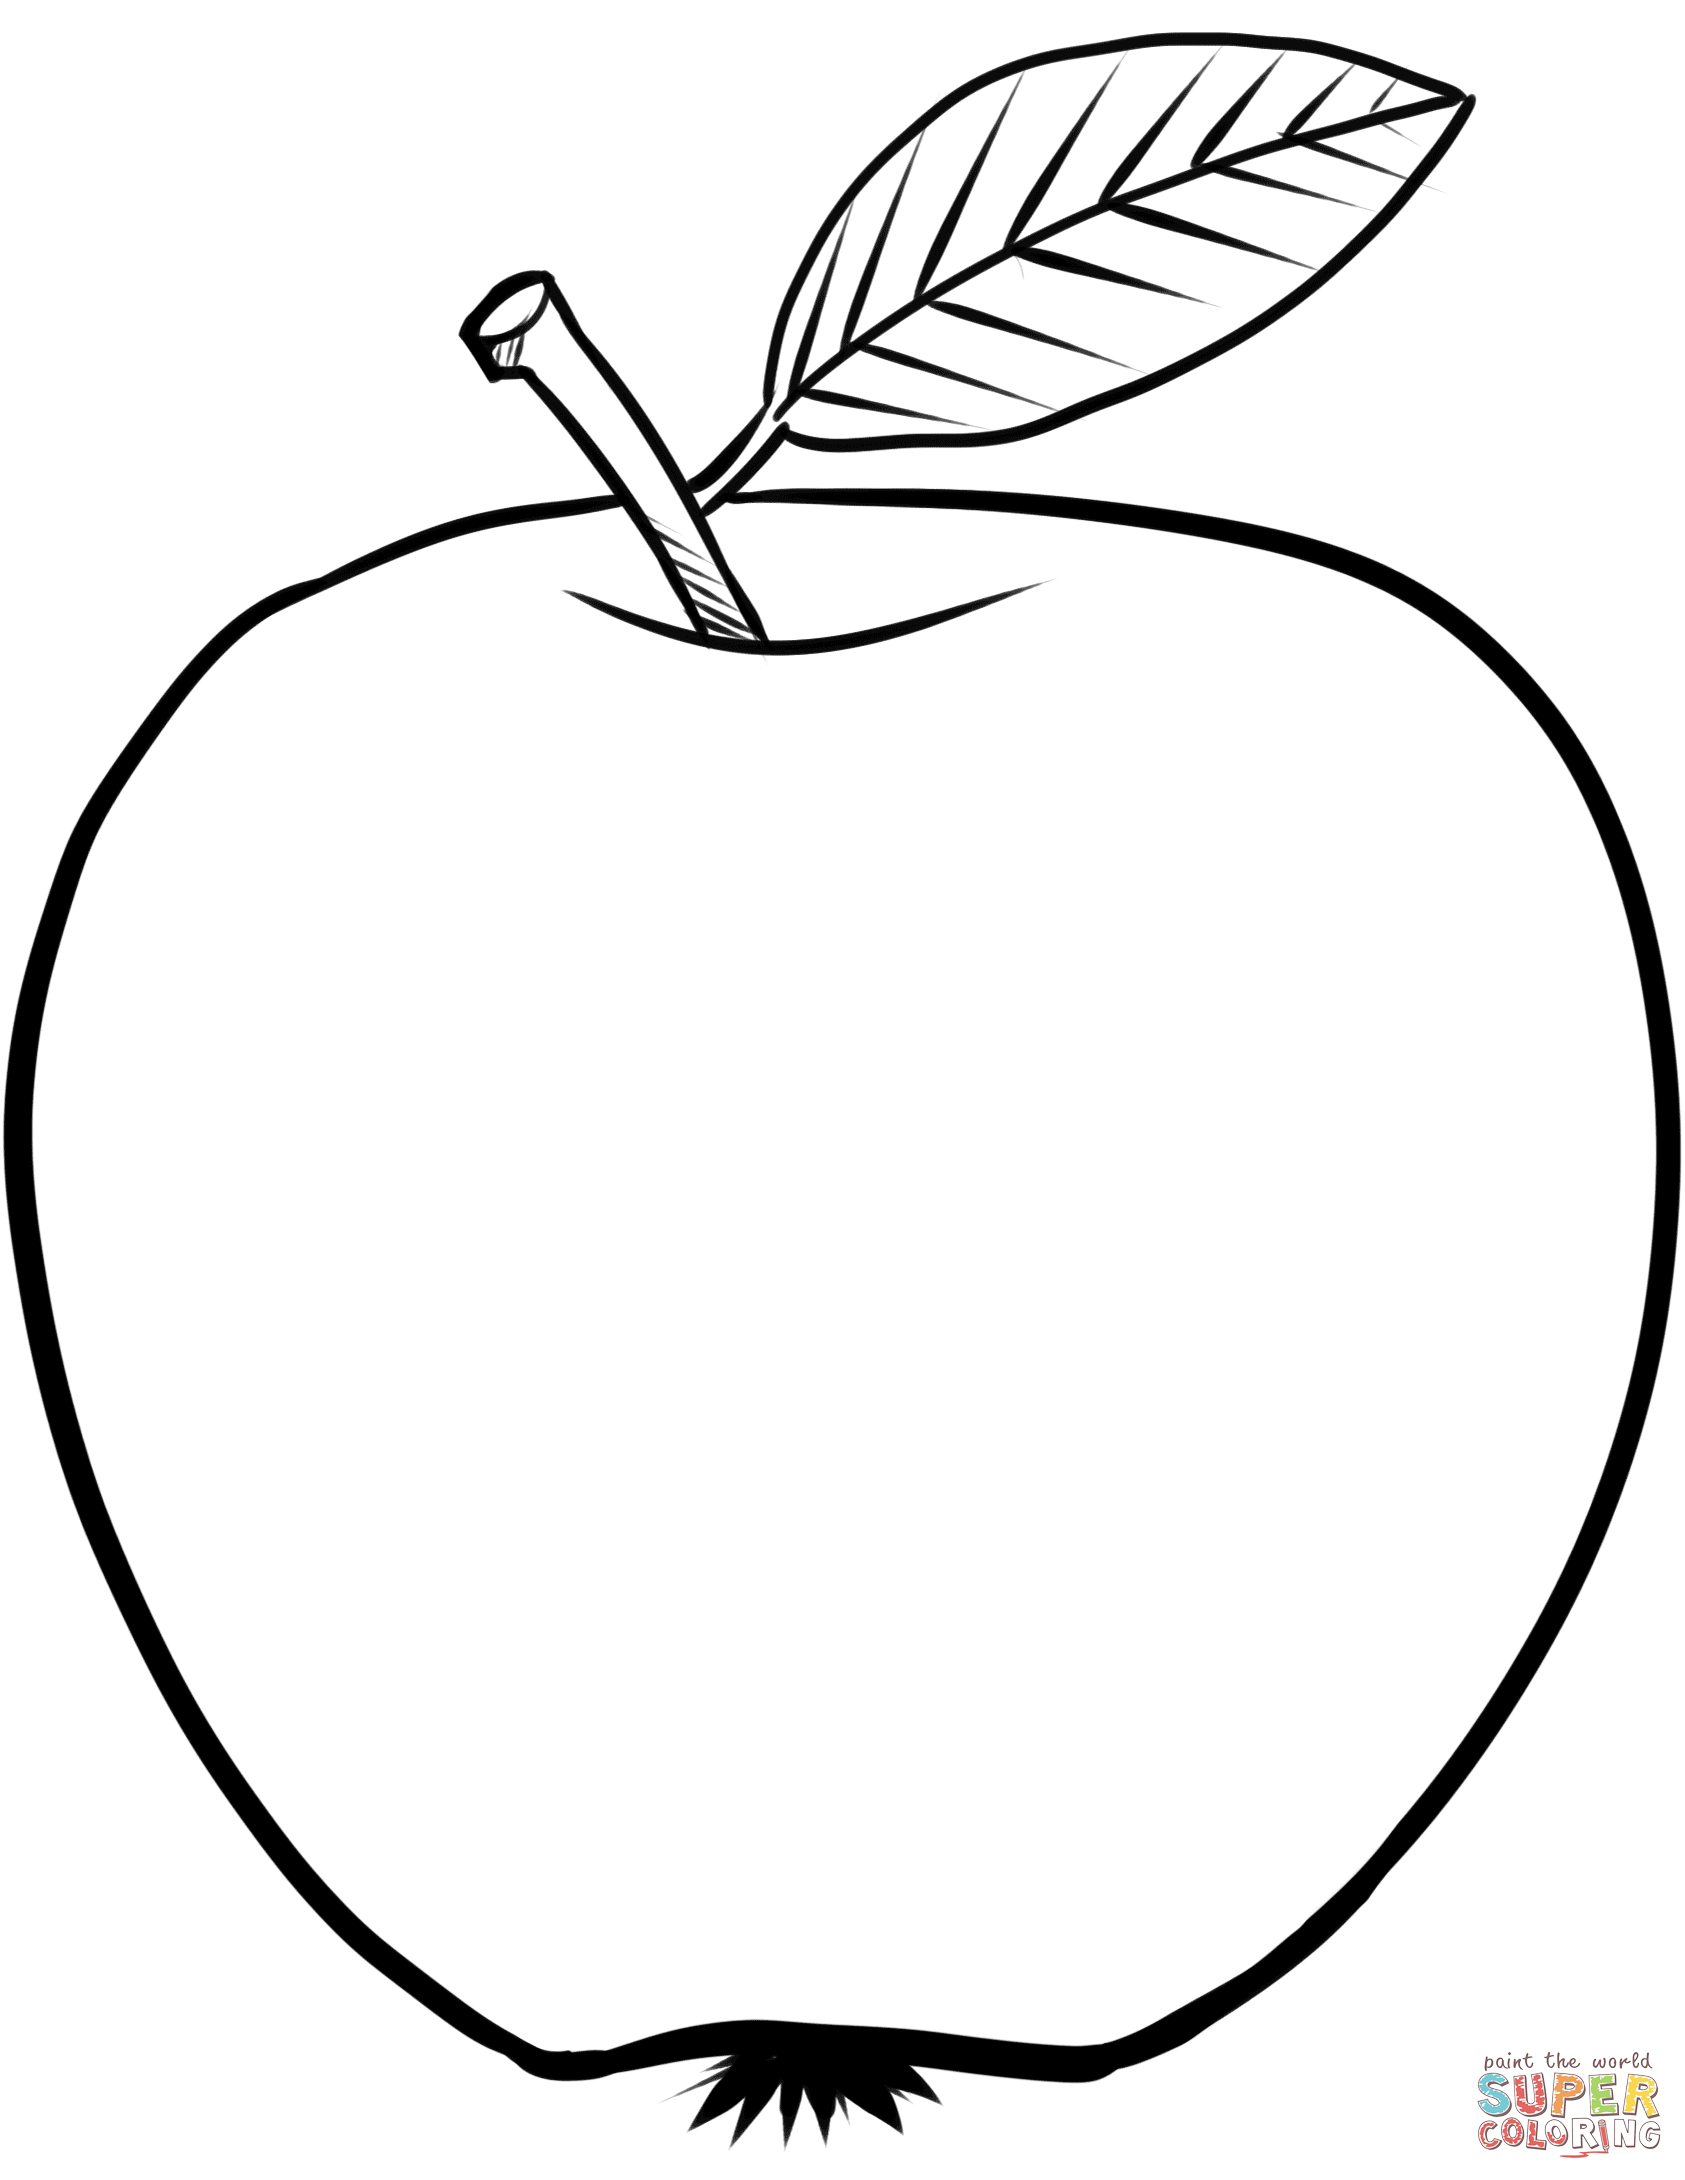 Ausmalbild: Apfel | Ausmalbilder Kostenlos Zum Ausdrucken über Apfel Ausmalbilder